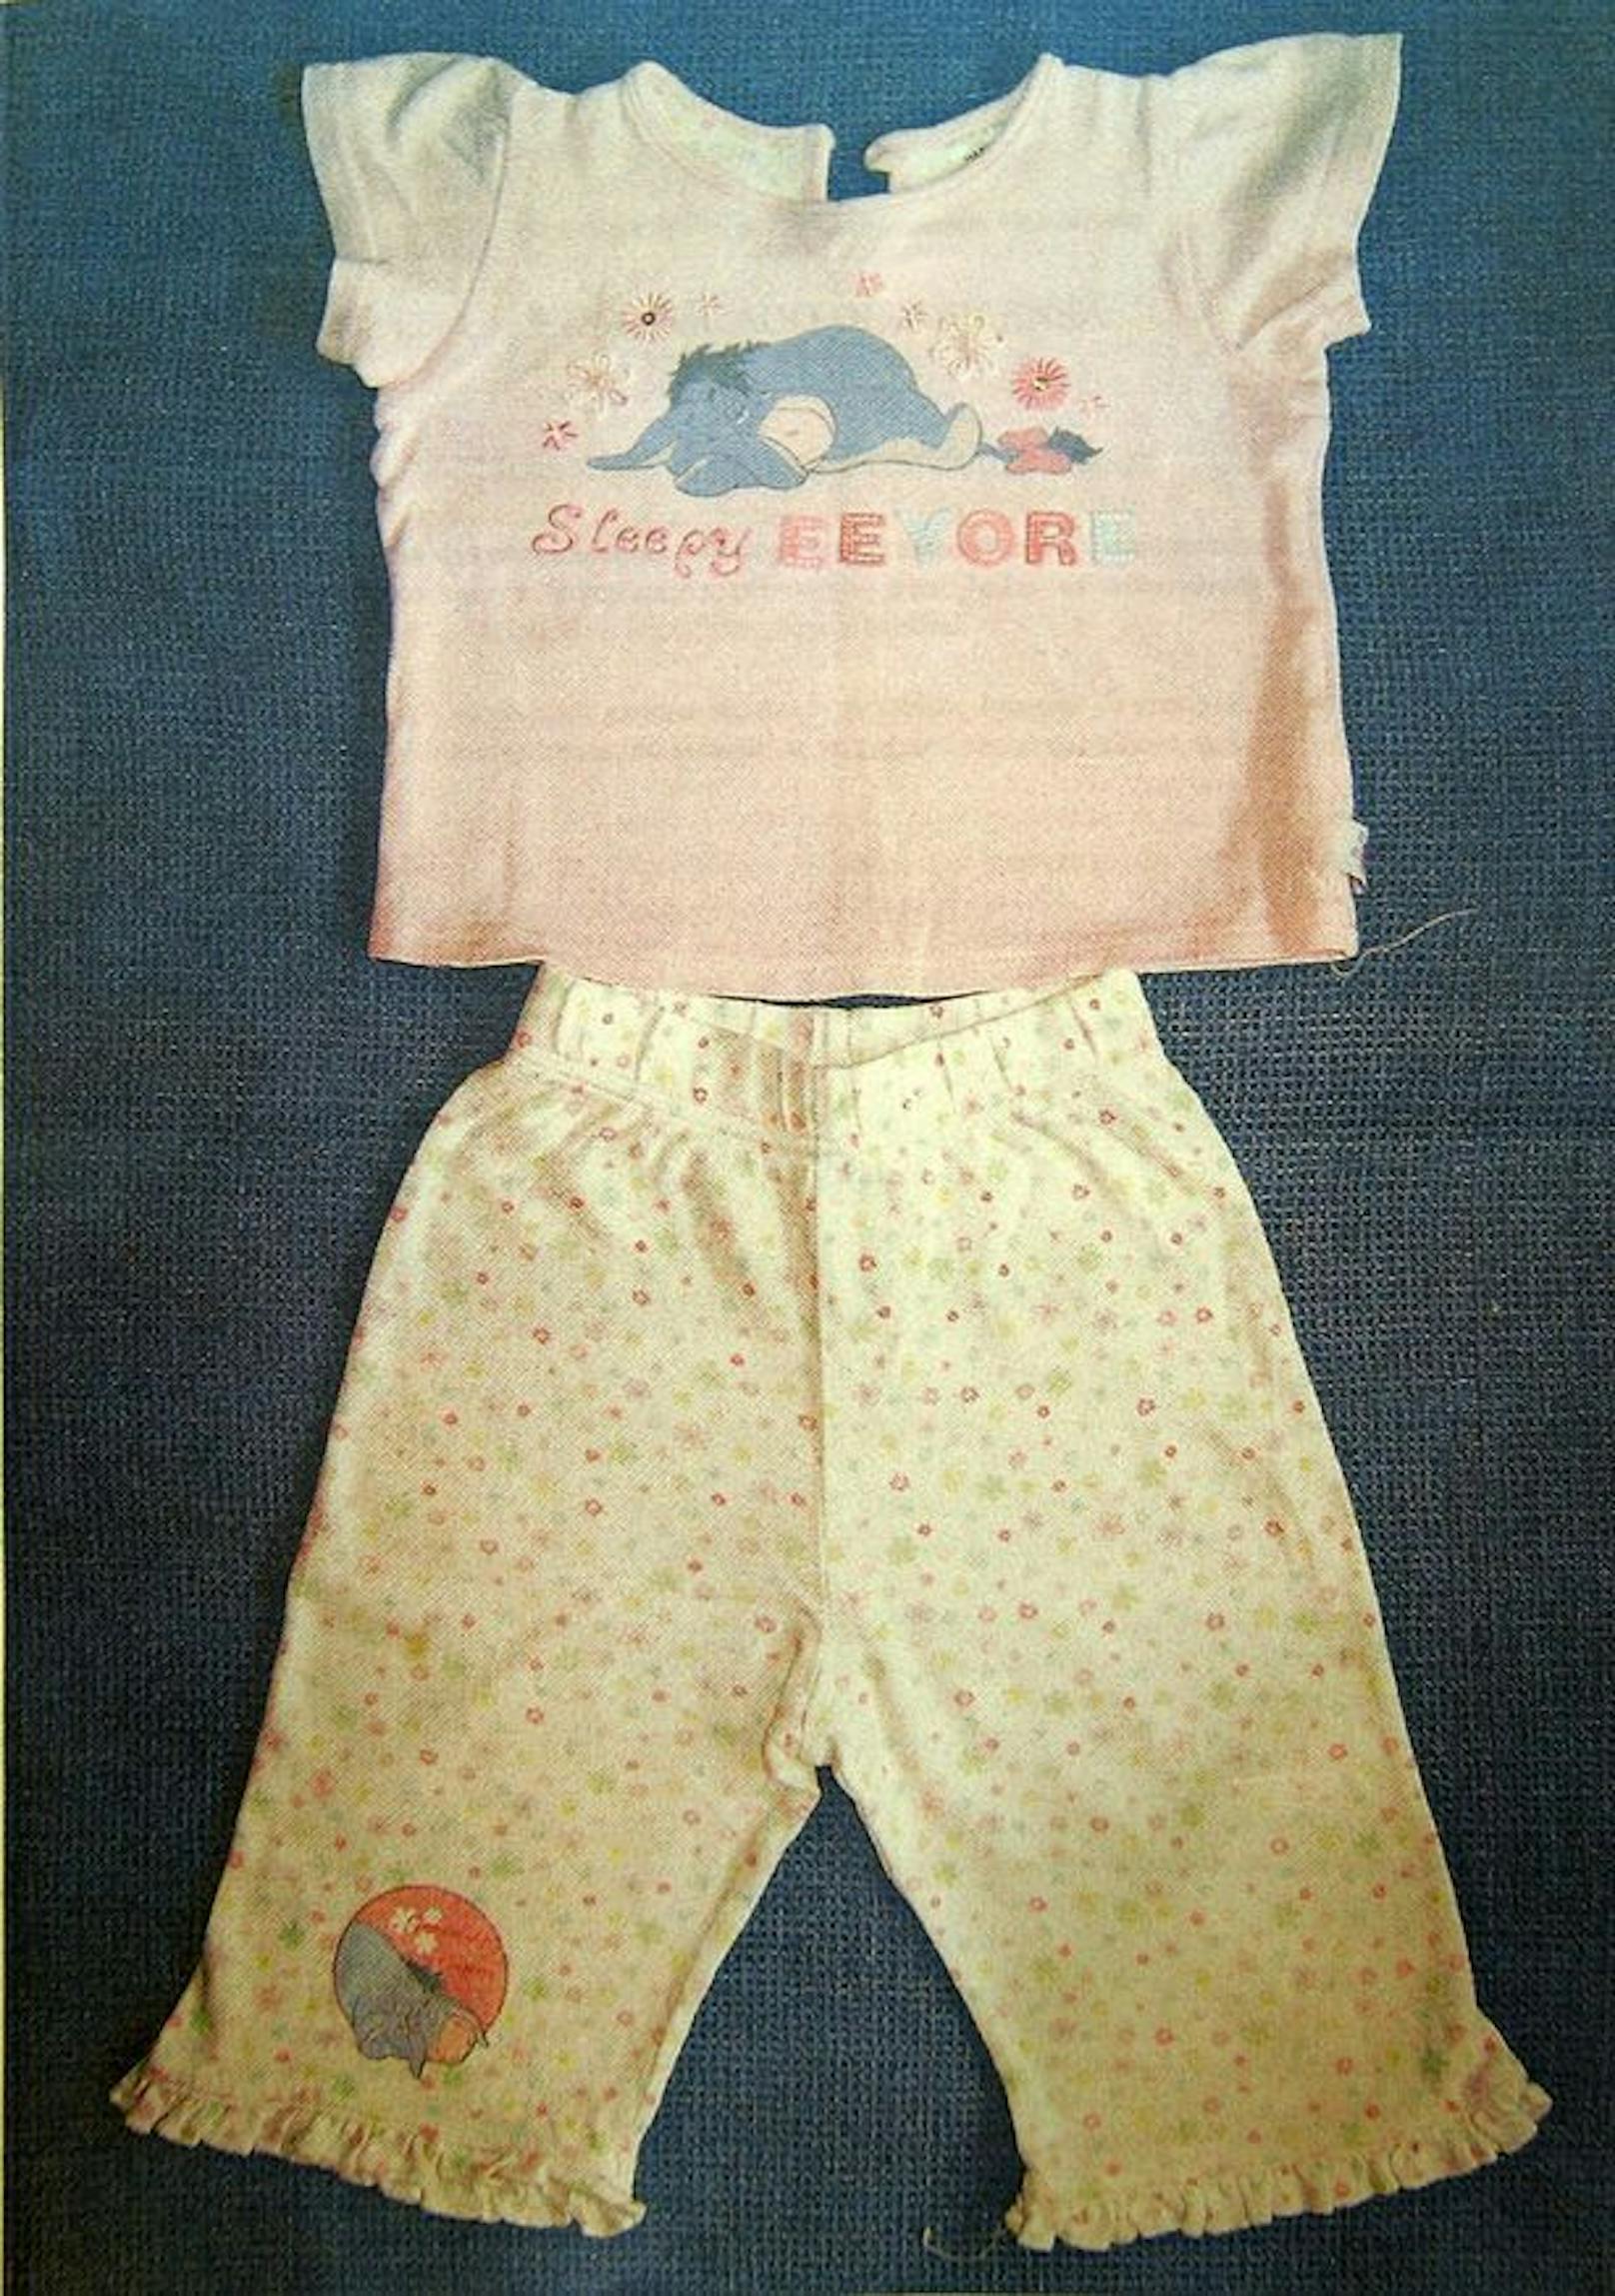 Die Polizei veröffentlichte 2007 dieses Bild, das einen Pyjama zeigt, der mit dem identisch ist, den Madeleine bei ihrem Verschwinden getragen hatte.